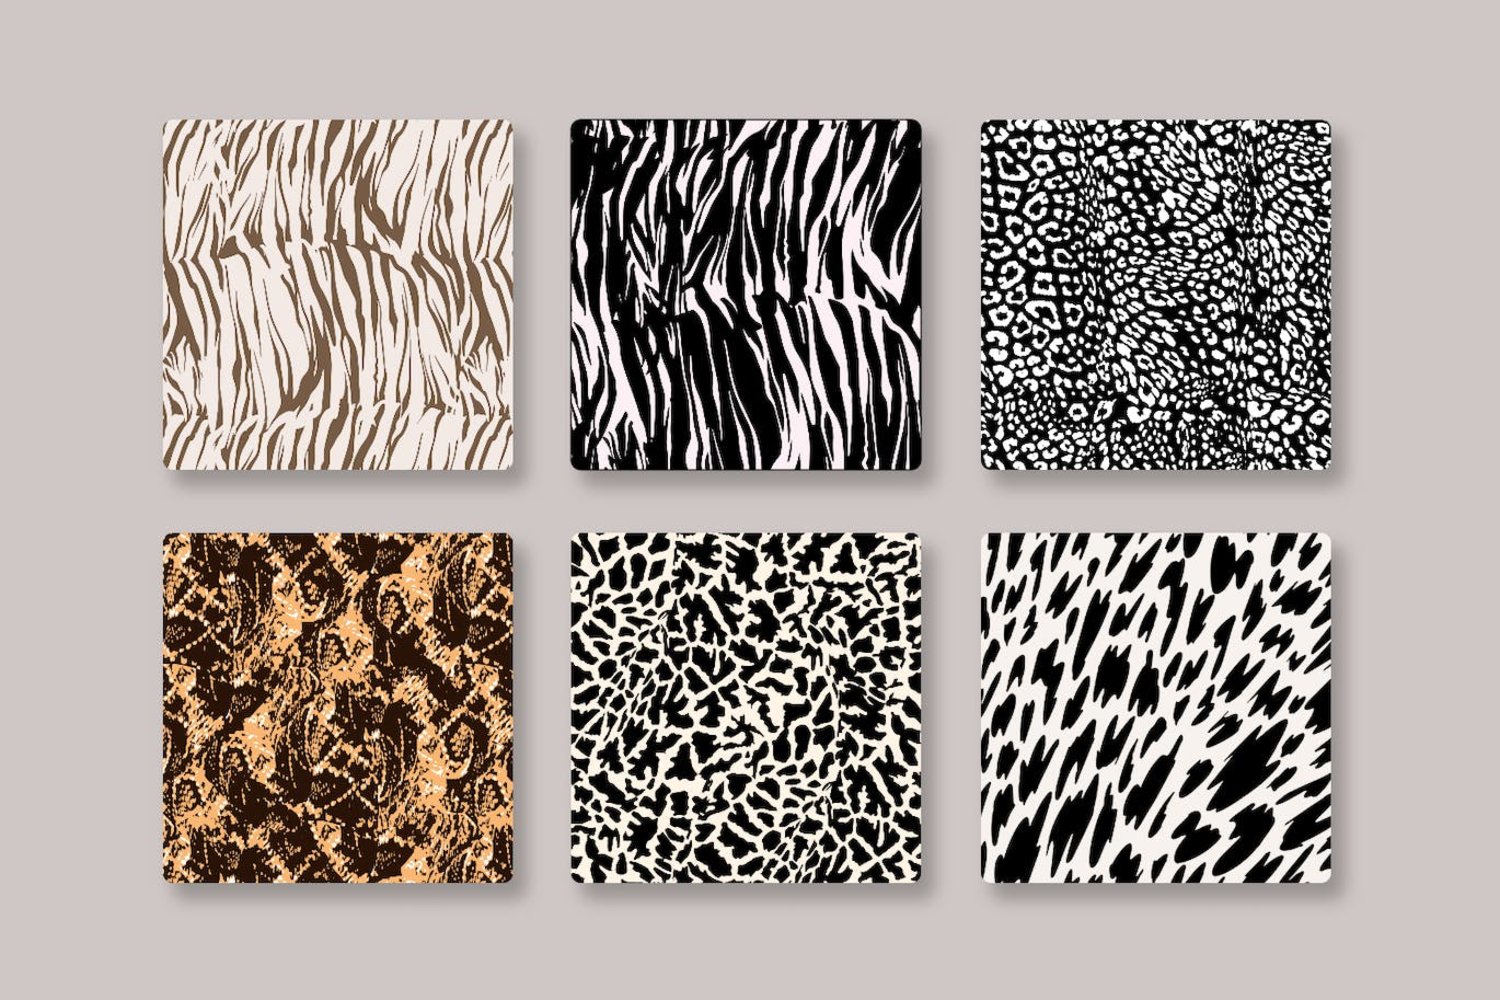 5272 6种动物皮肤豹纹纹矢量图案 6 Animal Prints Vector Patterns@GOOODME.COM